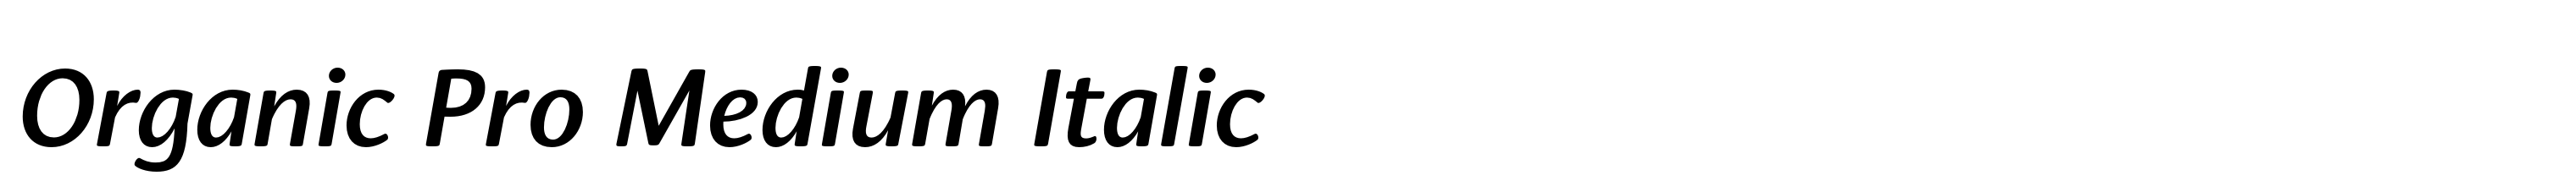 Organic Pro Medium Italic